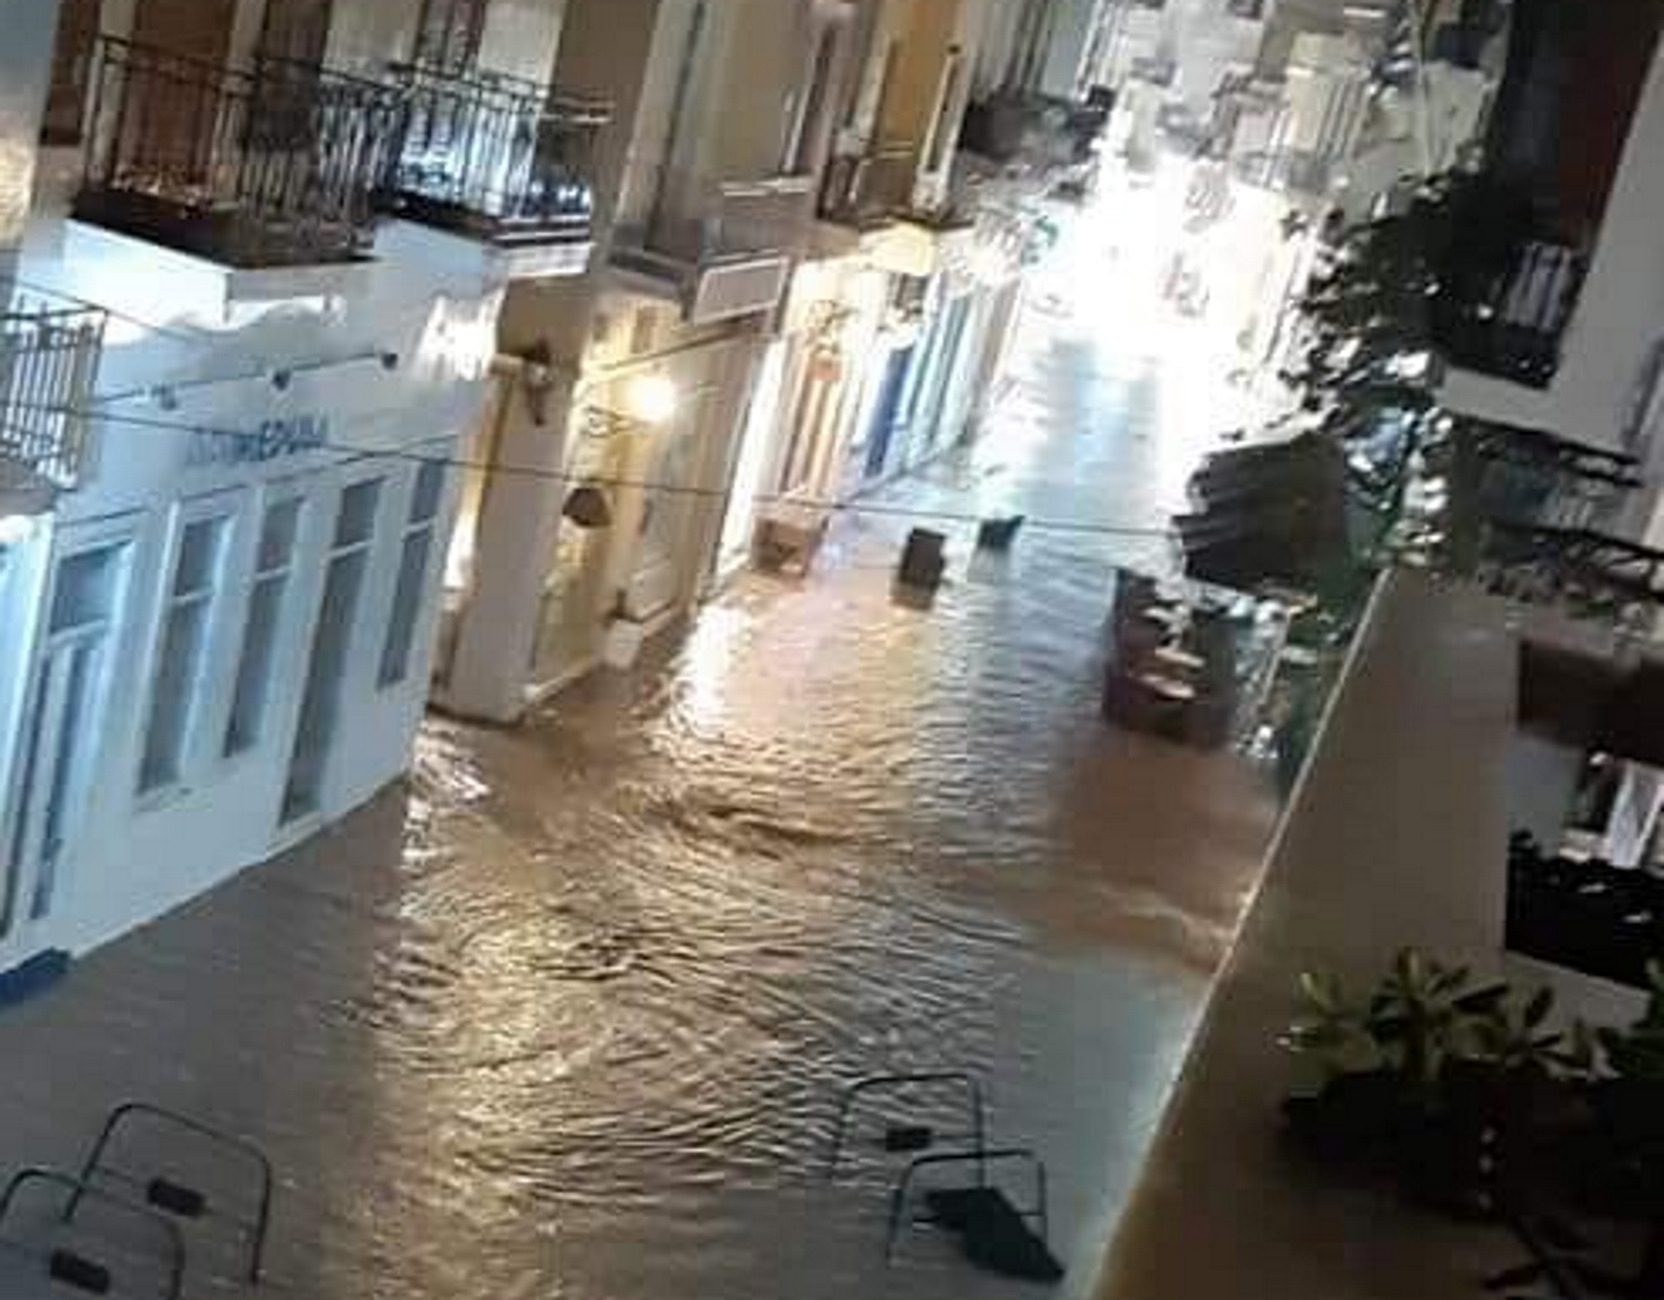 Σύρος: Η νύχτα που η Ερμούπολη έγινε Βενετία – Εικόνες που προβληματίζουν μετά από λίγα λεπτά βροχής – video